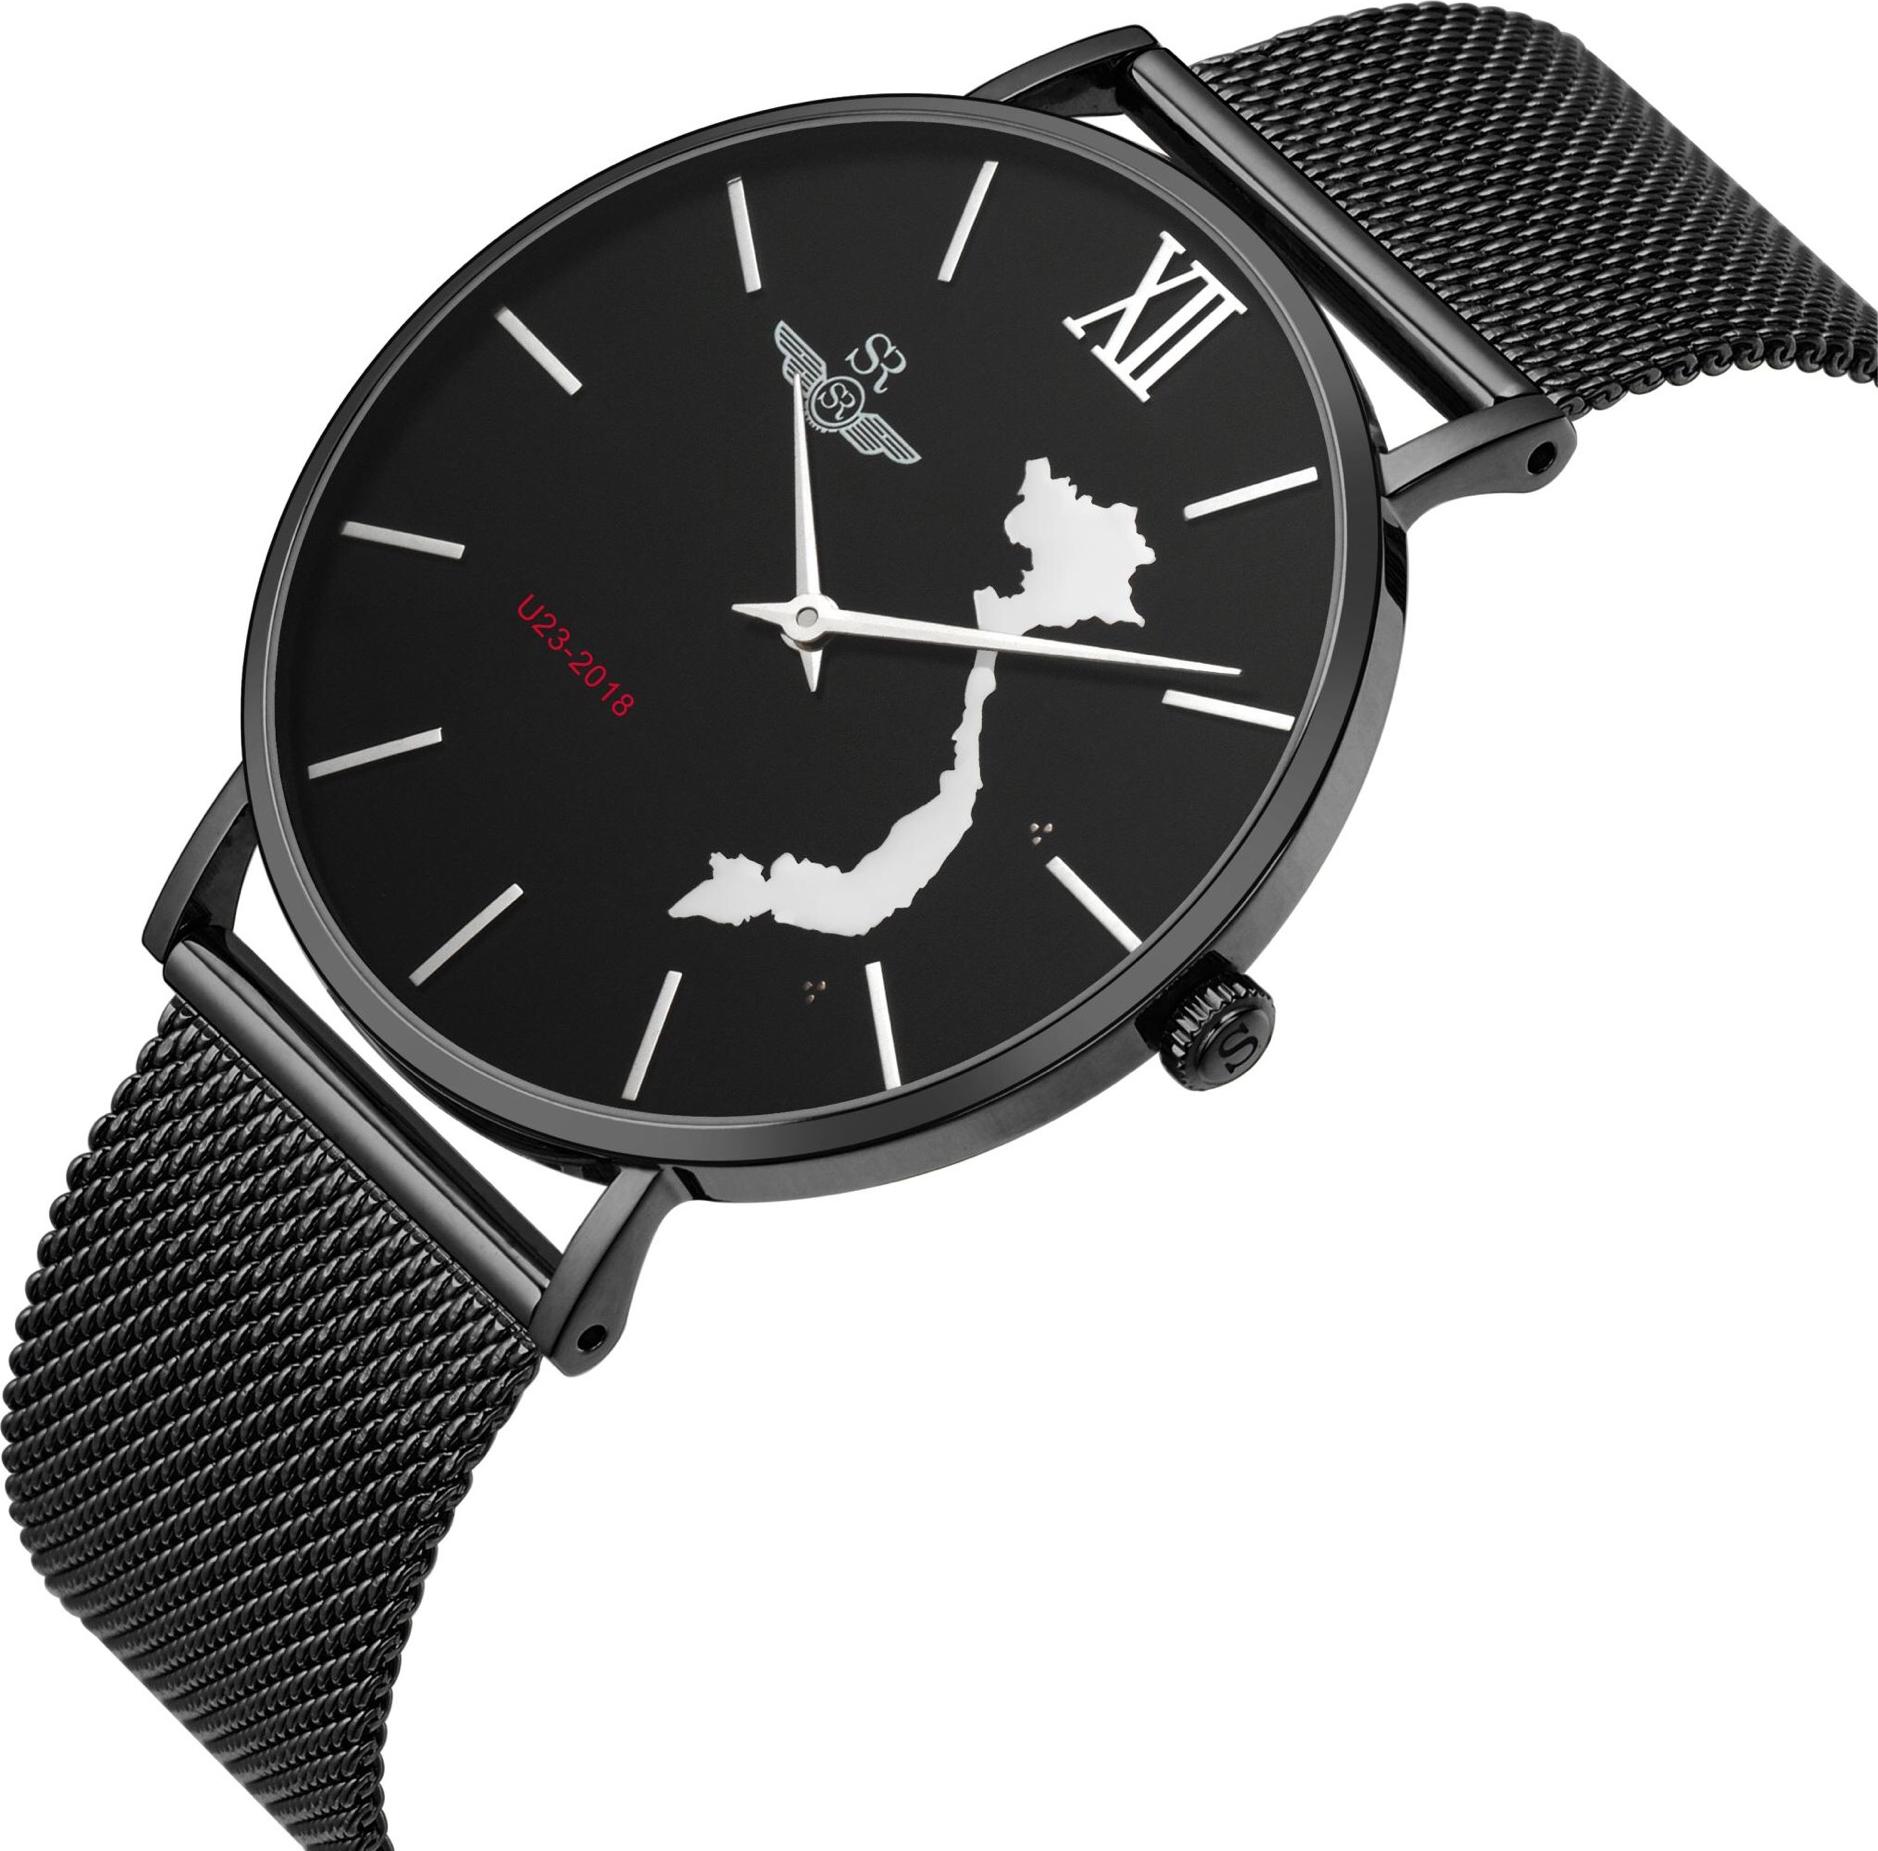 Đồng hồ nam SRwatch chính hãng Nhật Bản VNU2318